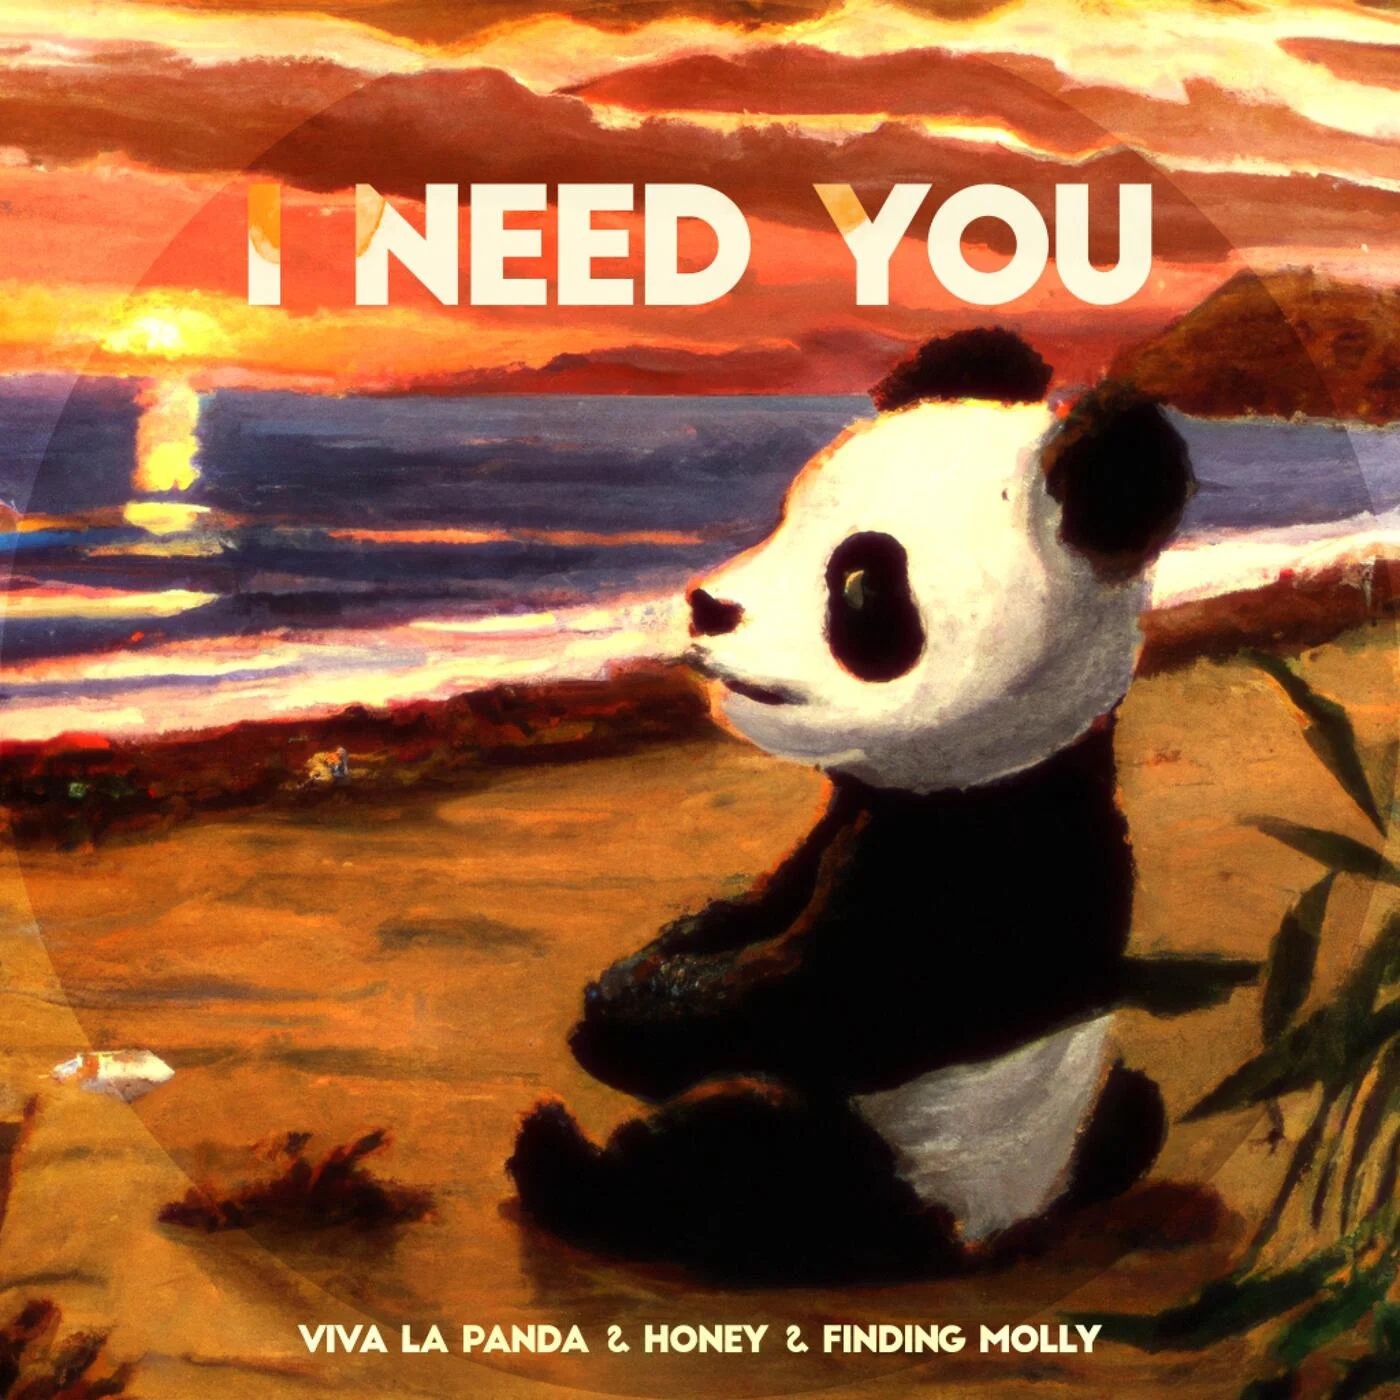 VIva La Panda, Honey, & Finding Molly I need you cover artwork